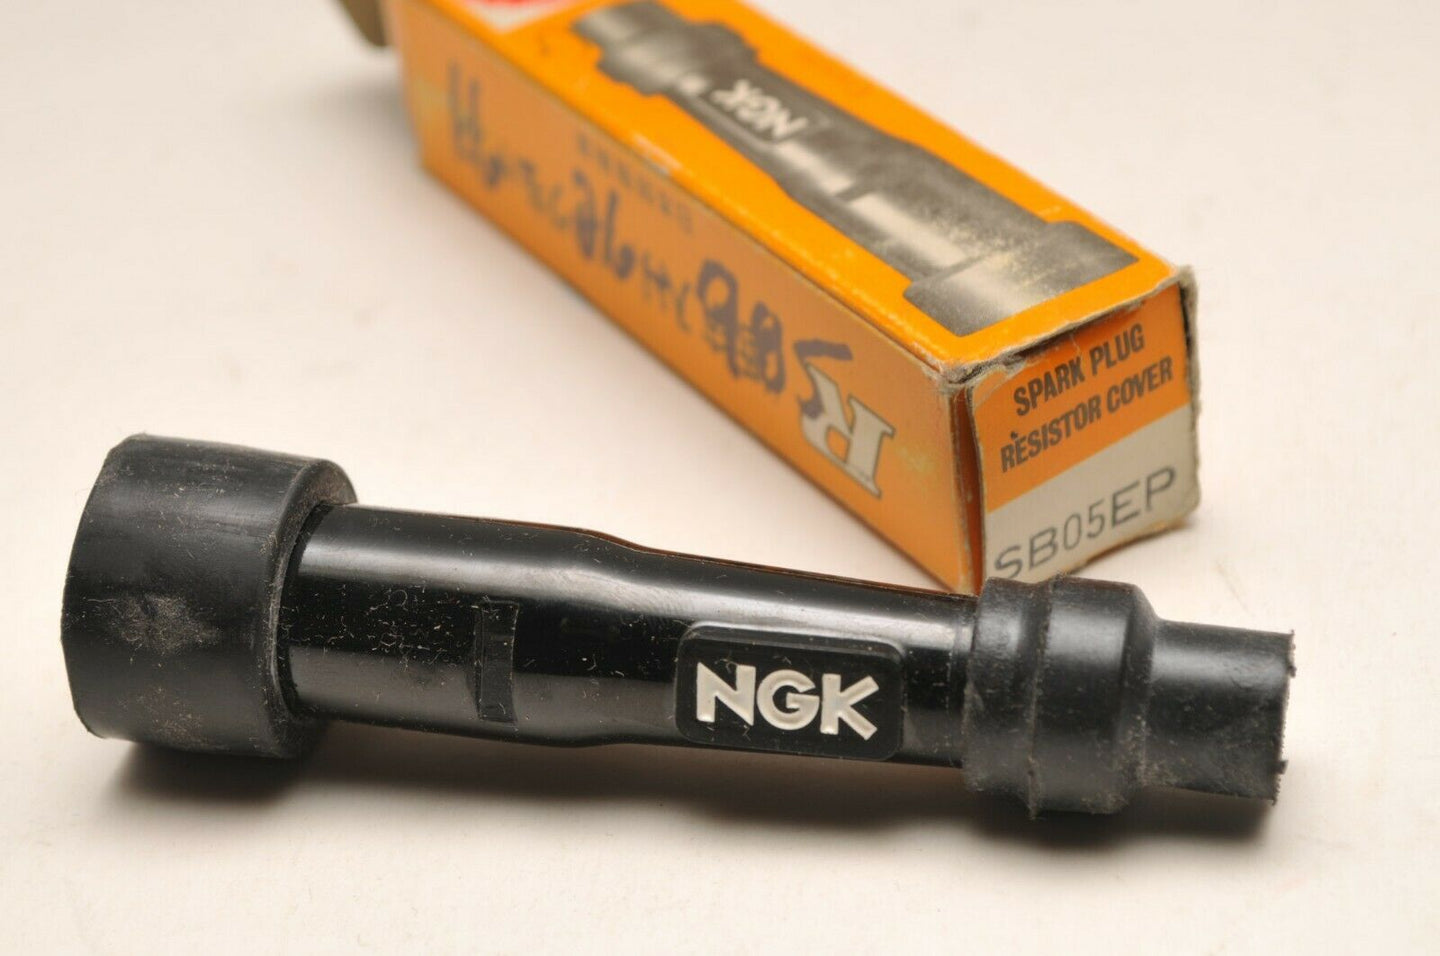 NGK SB05EP 8384 Spark Plug Resistor Cap / Capuchon de Résistance